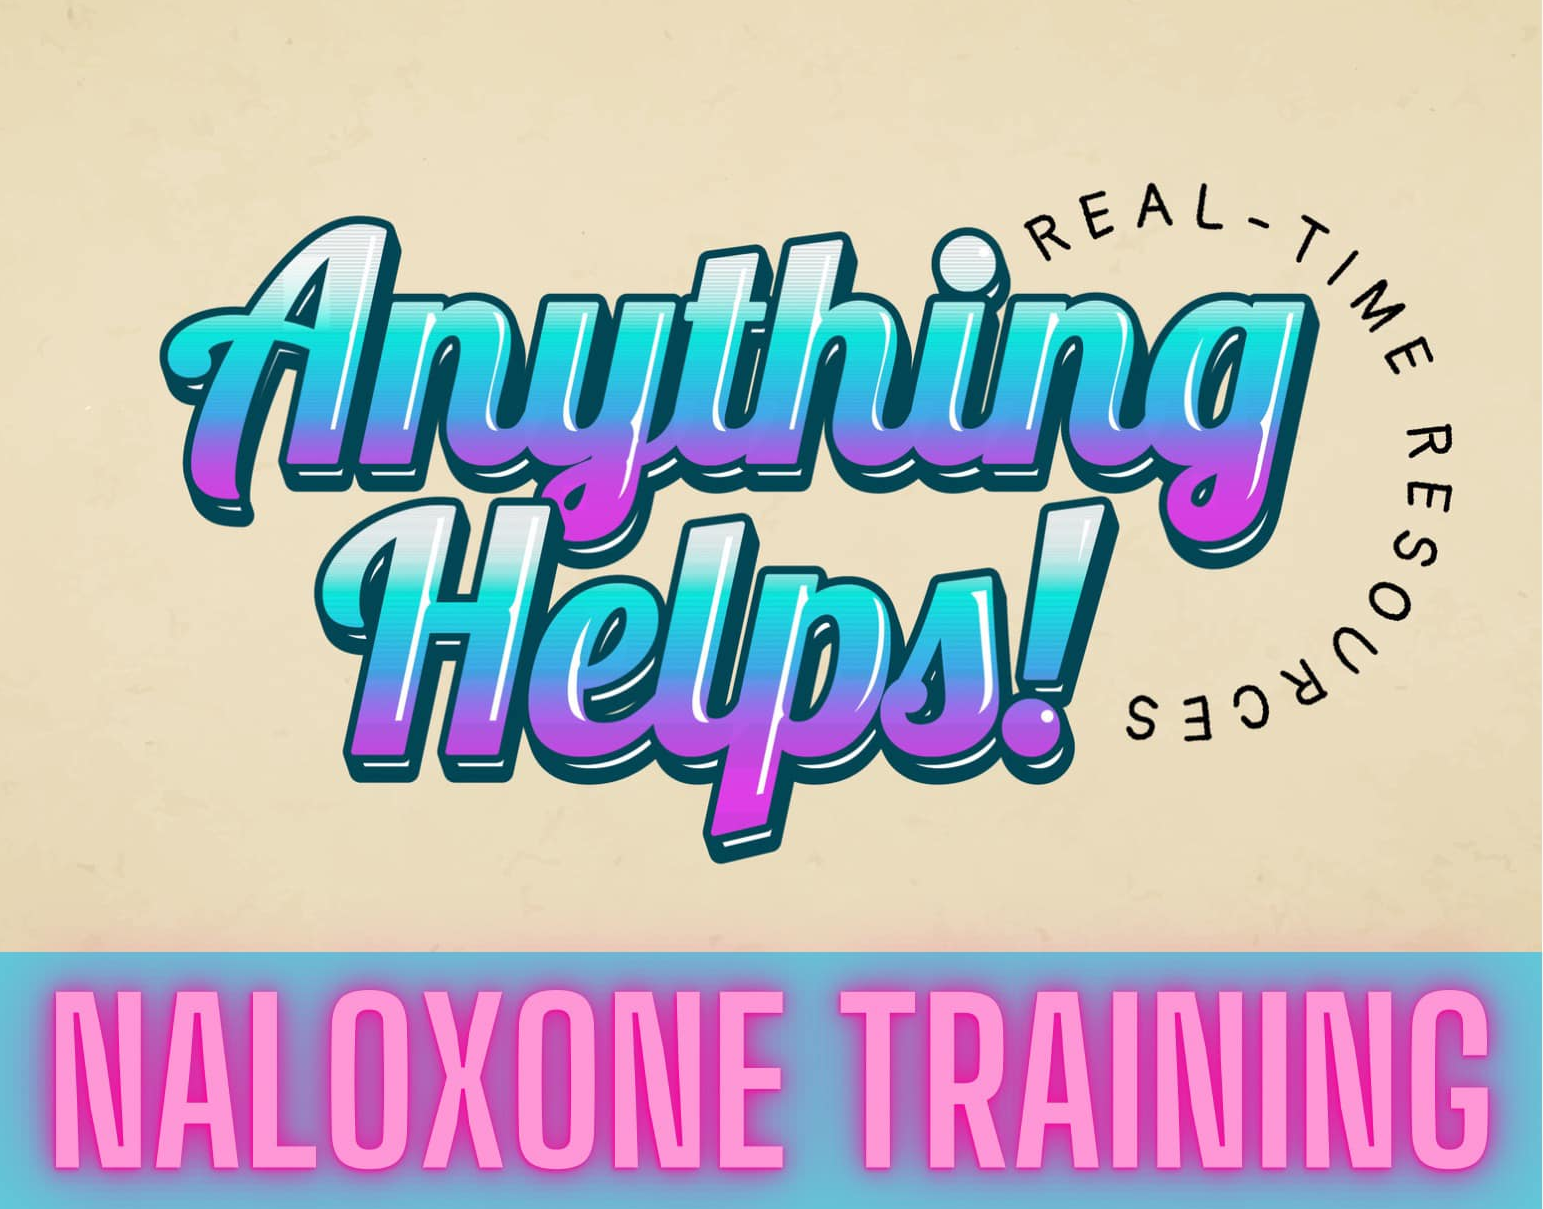 Anything Helps Naloxone Training